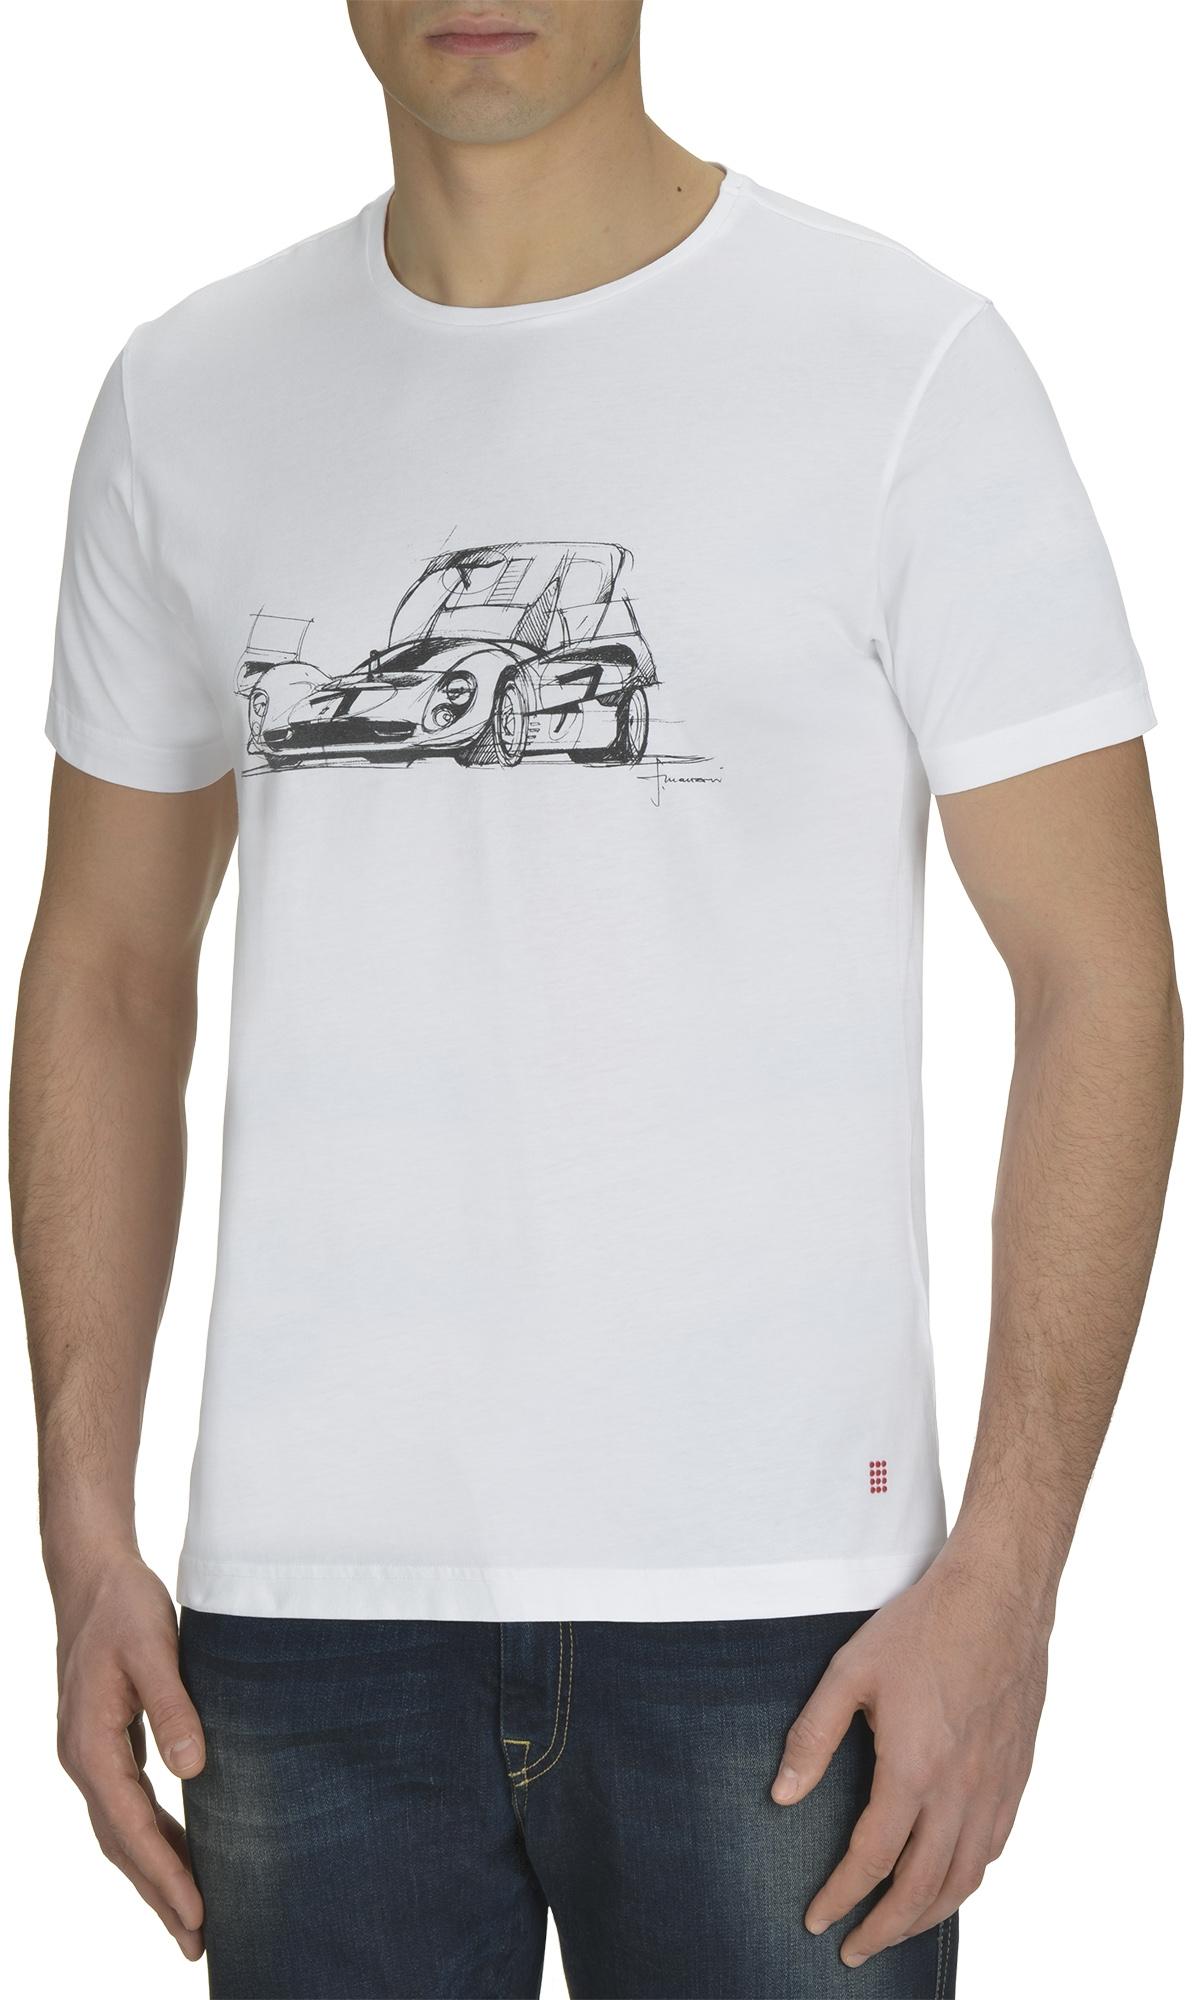 Racing Car Draft T-Shirt